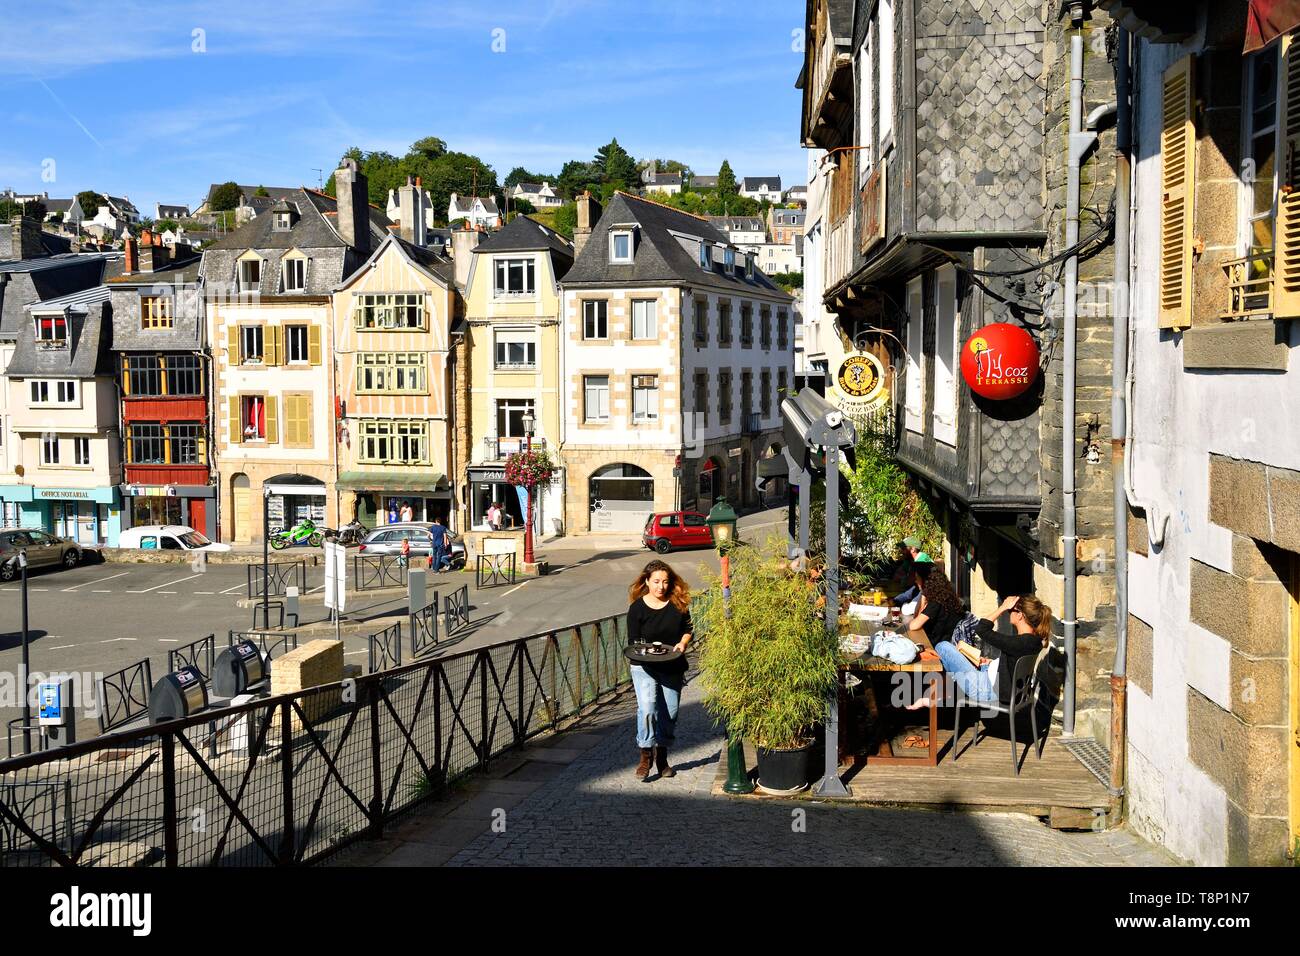 La France, Finistère, Morlaix, place Allende, Ty Coz bar Photo Stock - Alamy